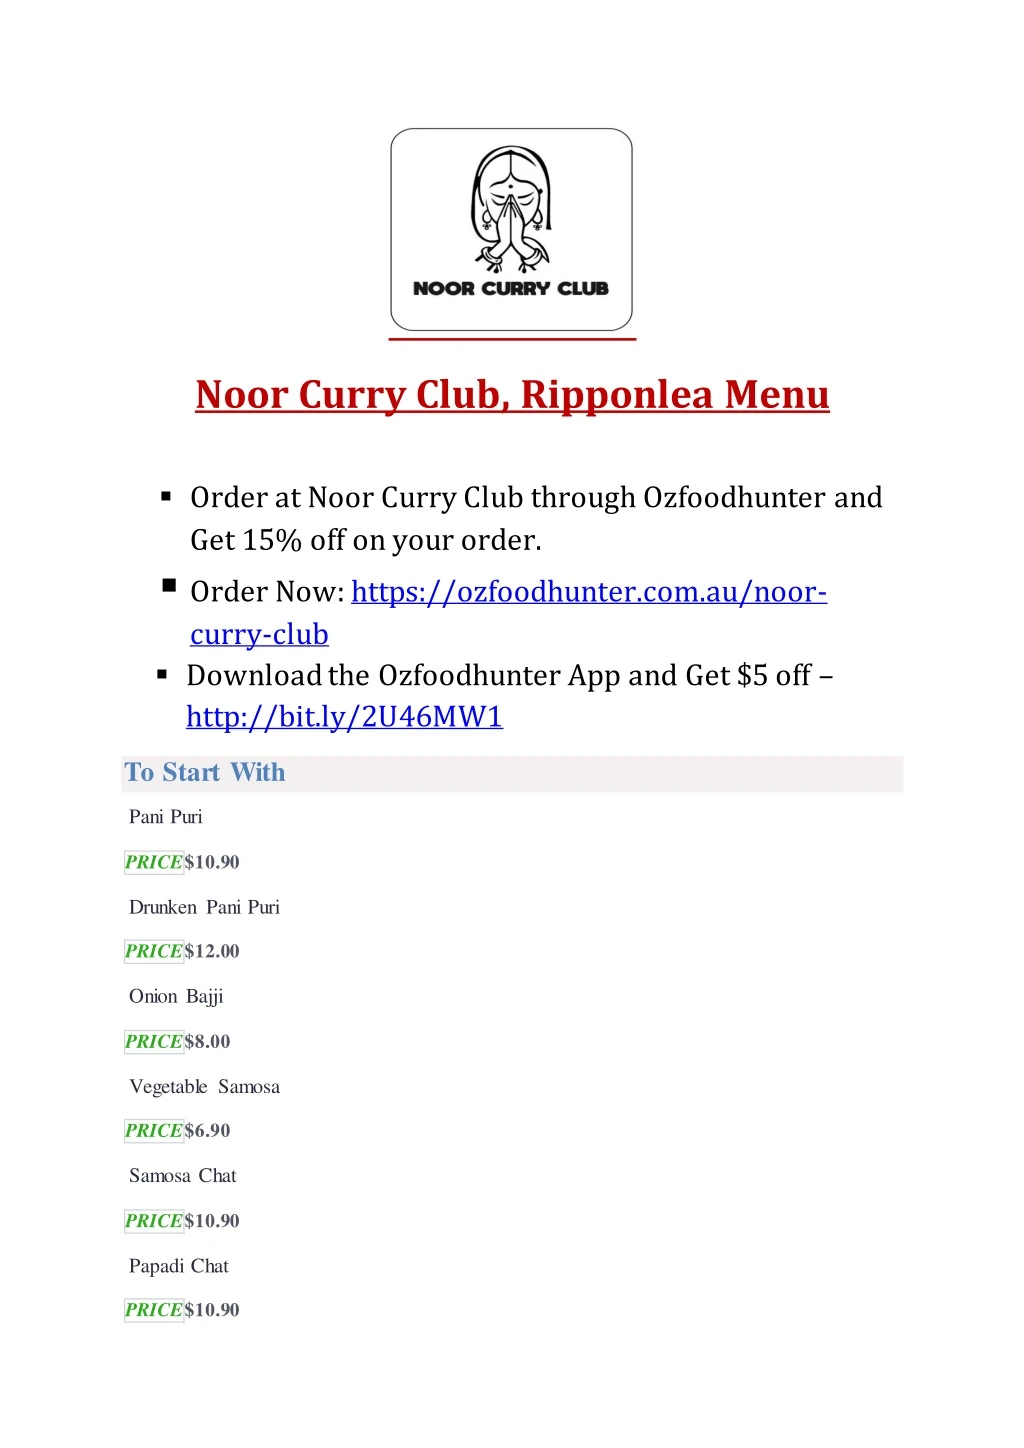 noor curry club ripponlea menu